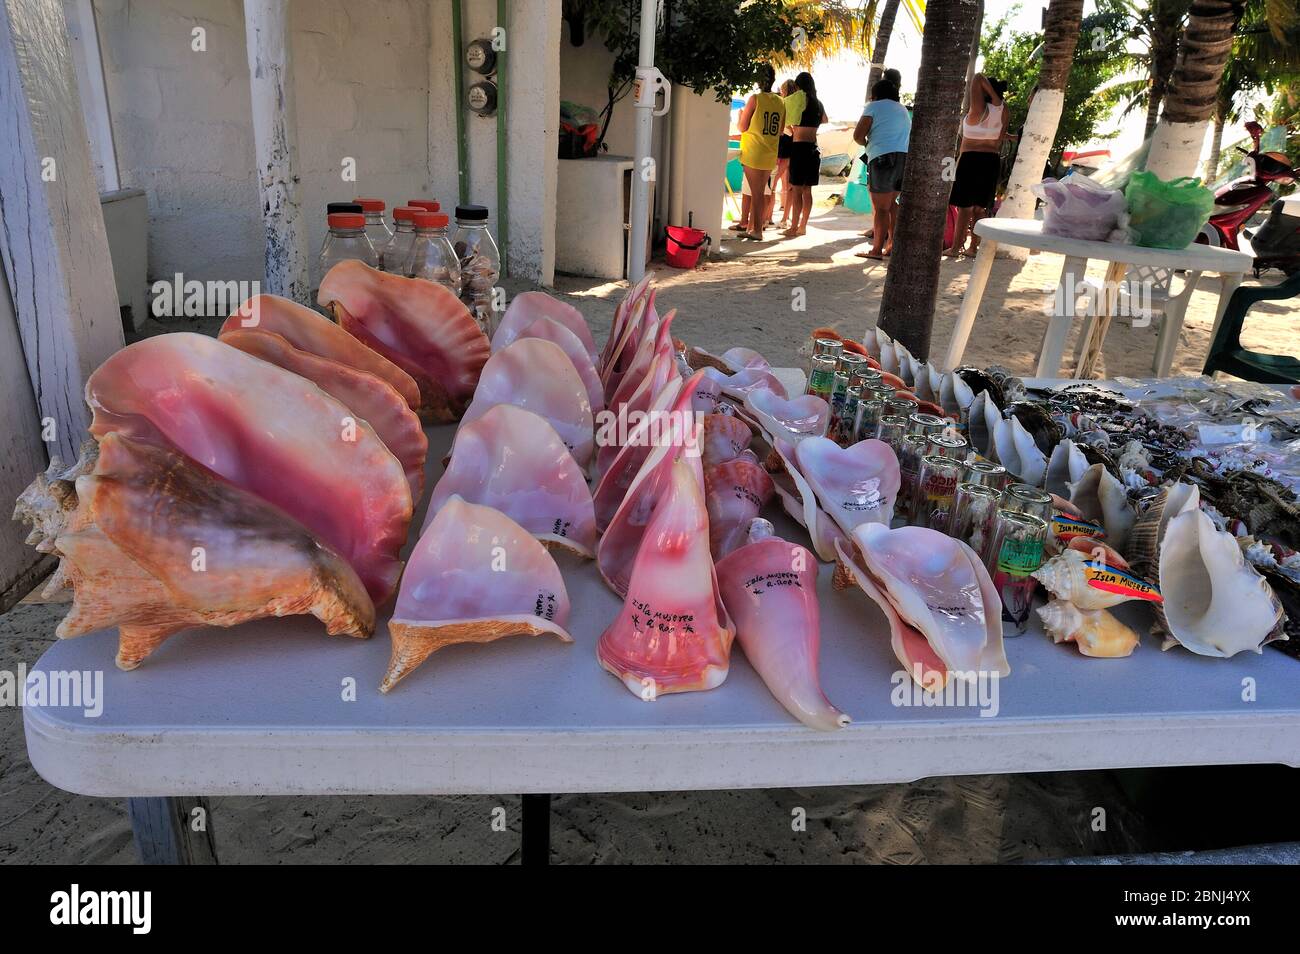 Meerestiere wie Muscheln und Seesterne / Seesterne gesammelt werden, um als Souvenirs an Touristen verkauft werden, Isla de Mujeres, Yucatan Halbinsel, Mexiko Stockfoto